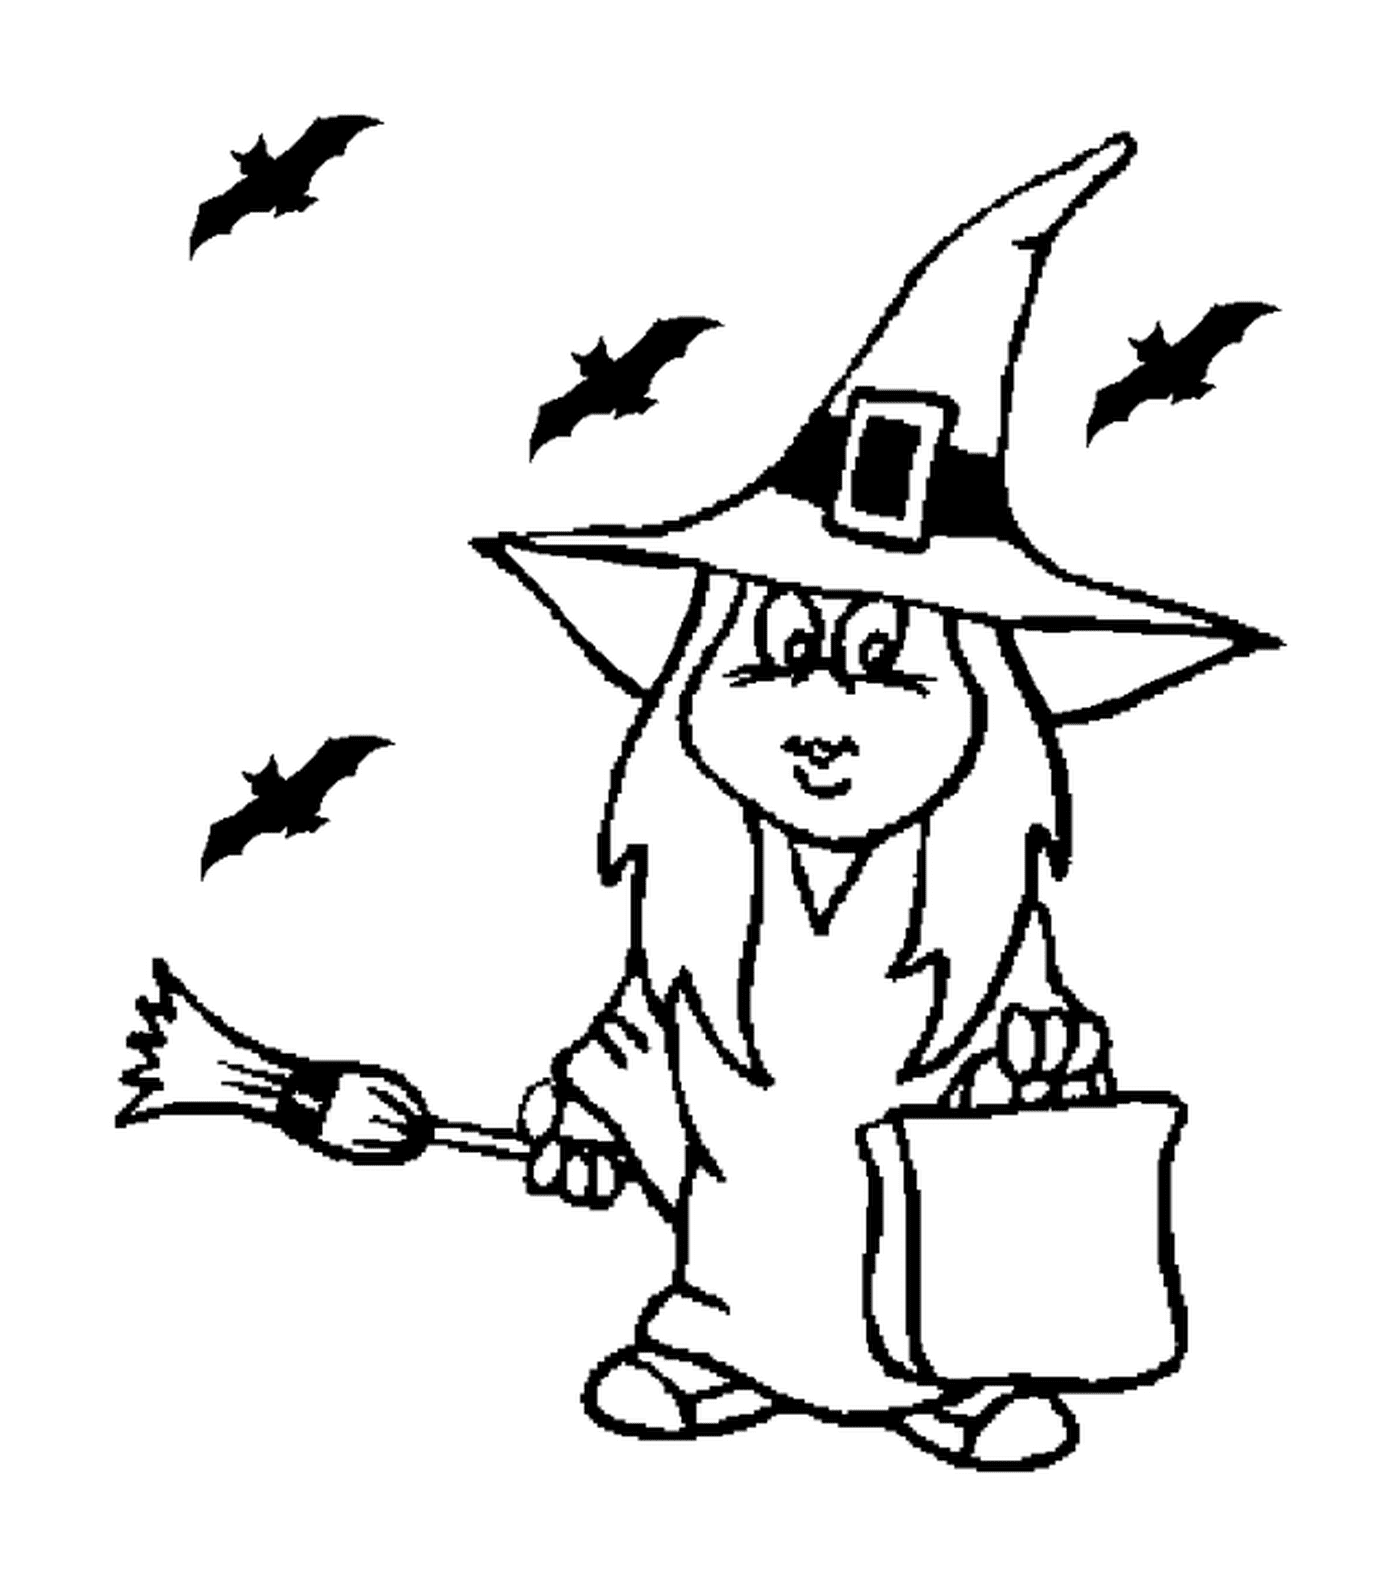  bruxa segurando uma vassoura 